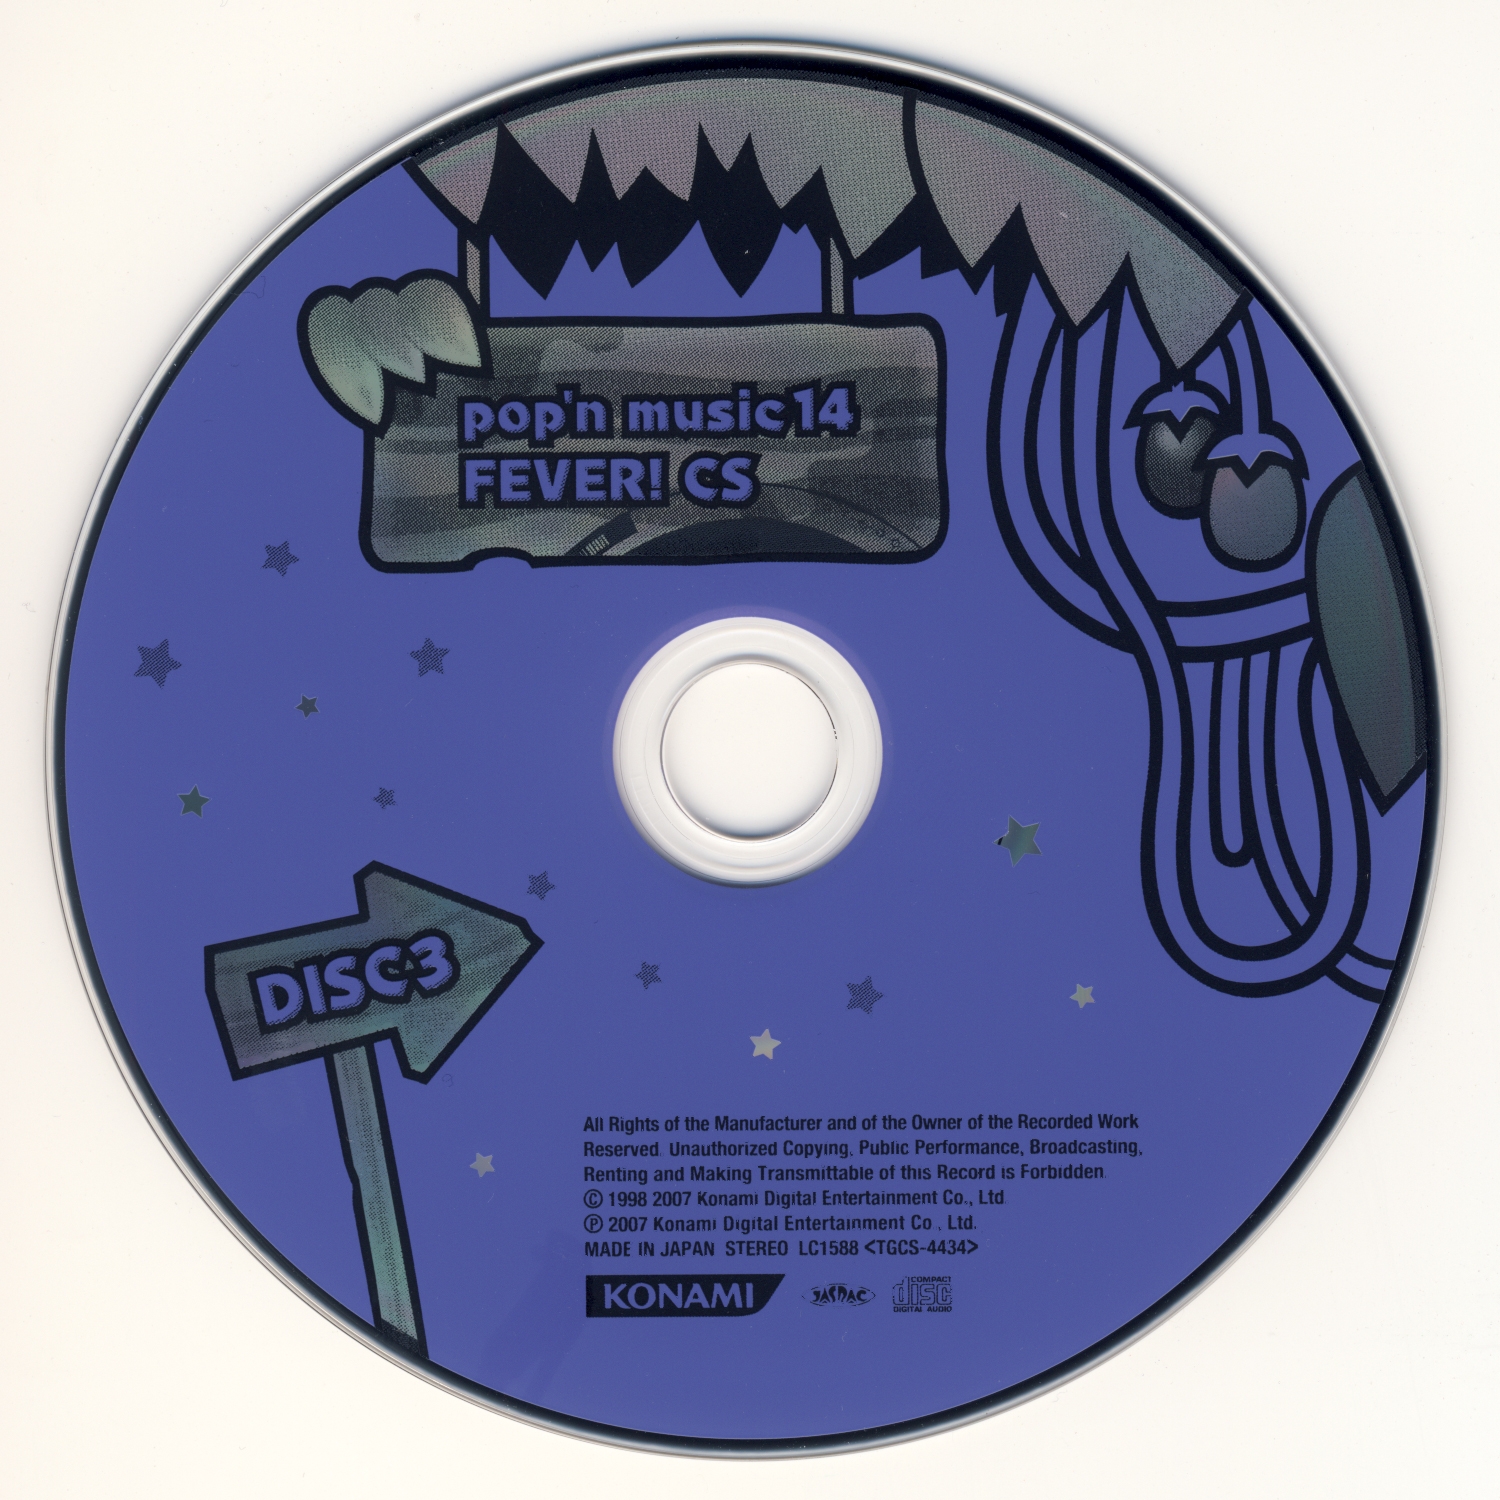 pop'n music 15 ADVENTURE AC ♥ CS pop'n music 14 FEVER! (2007) MP3 -  Download pop'n music 15 ADVENTURE AC ♥ CS pop'n music 14 FEVER! (2007)  Soundtracks for FREE!